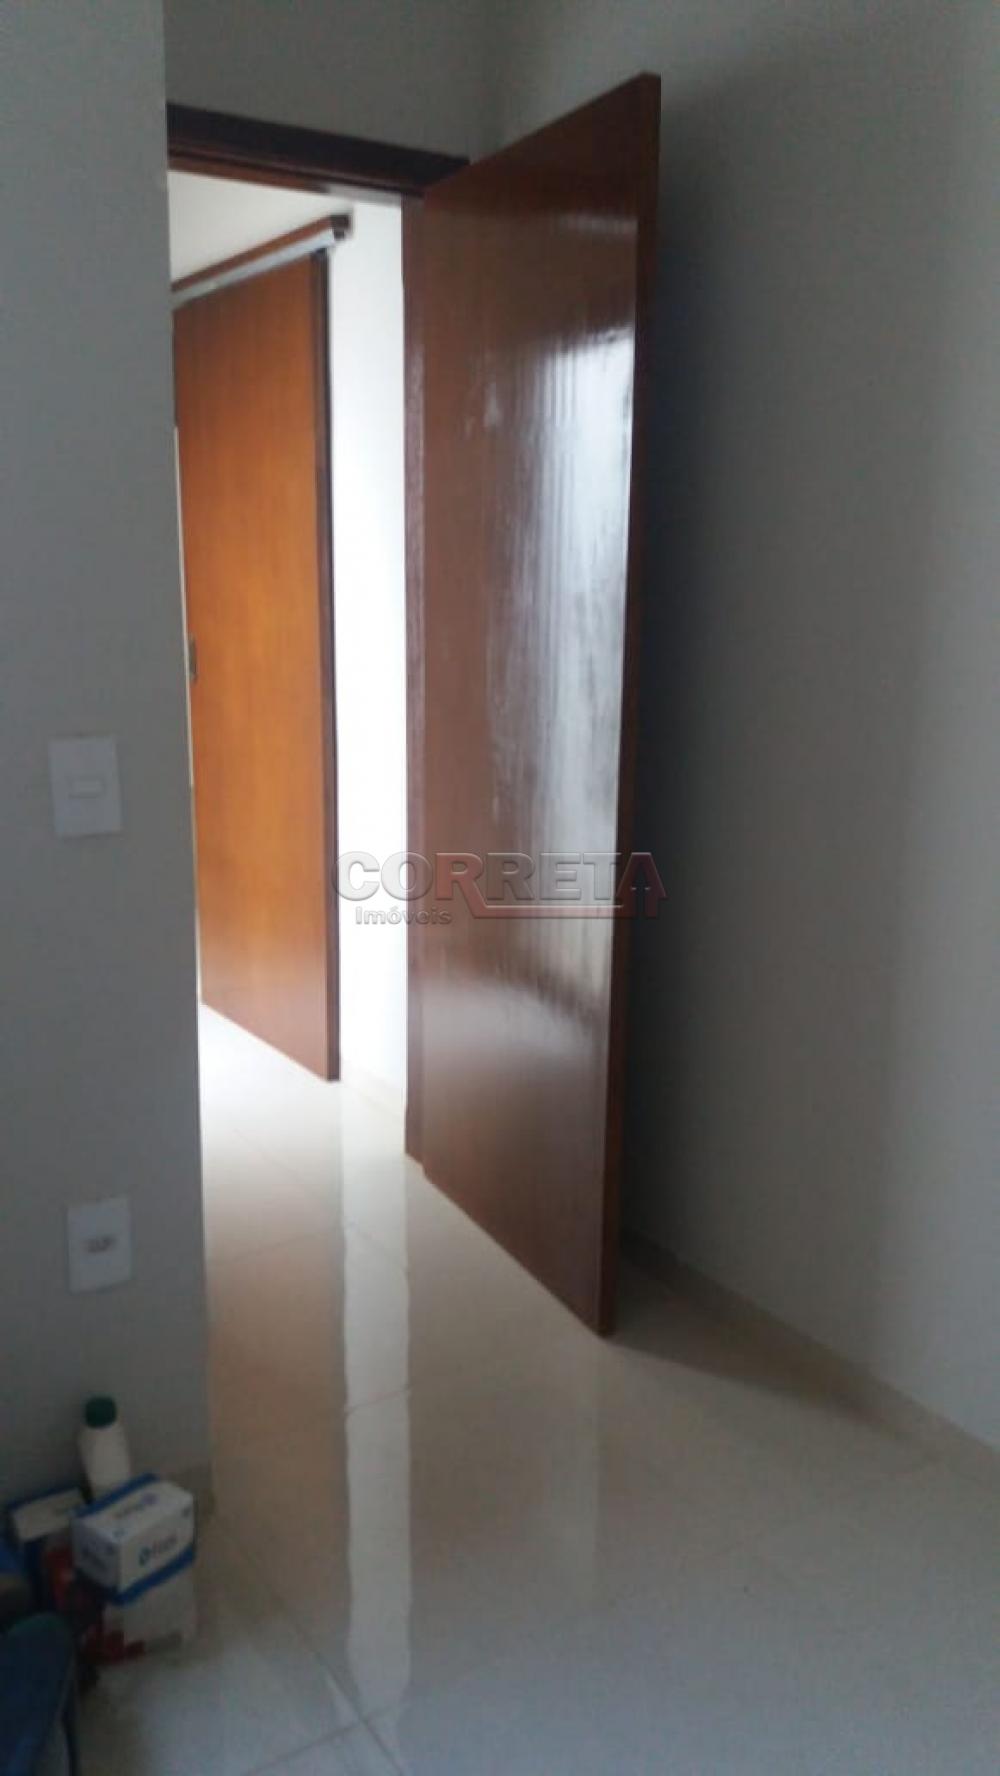 Comprar Casa / Residencial em Araçatuba R$ 390.000,00 - Foto 4